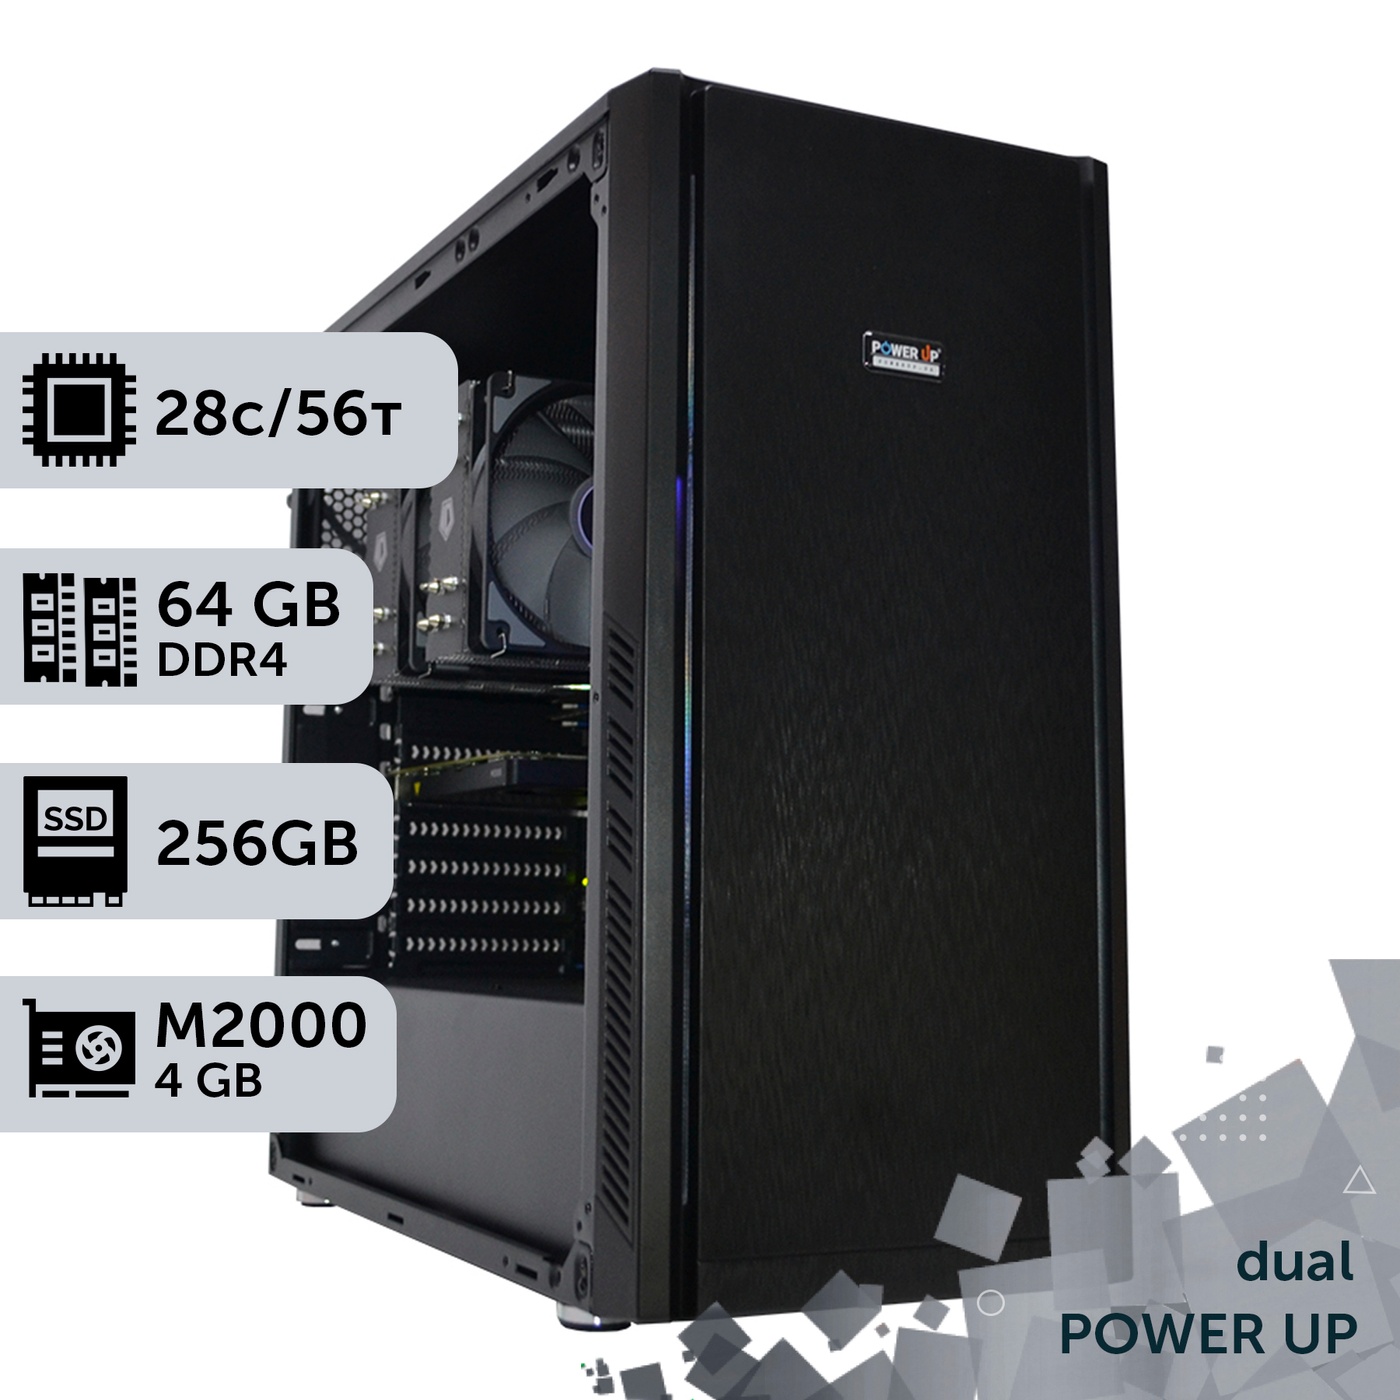 Двухпроцессорная рабочая станция PowerUp #140 Xeon E5 2680 v4 x2/64 GB/HDD 1 TB/SSD 256GB/NVIDIA Quadro M2000 4GB